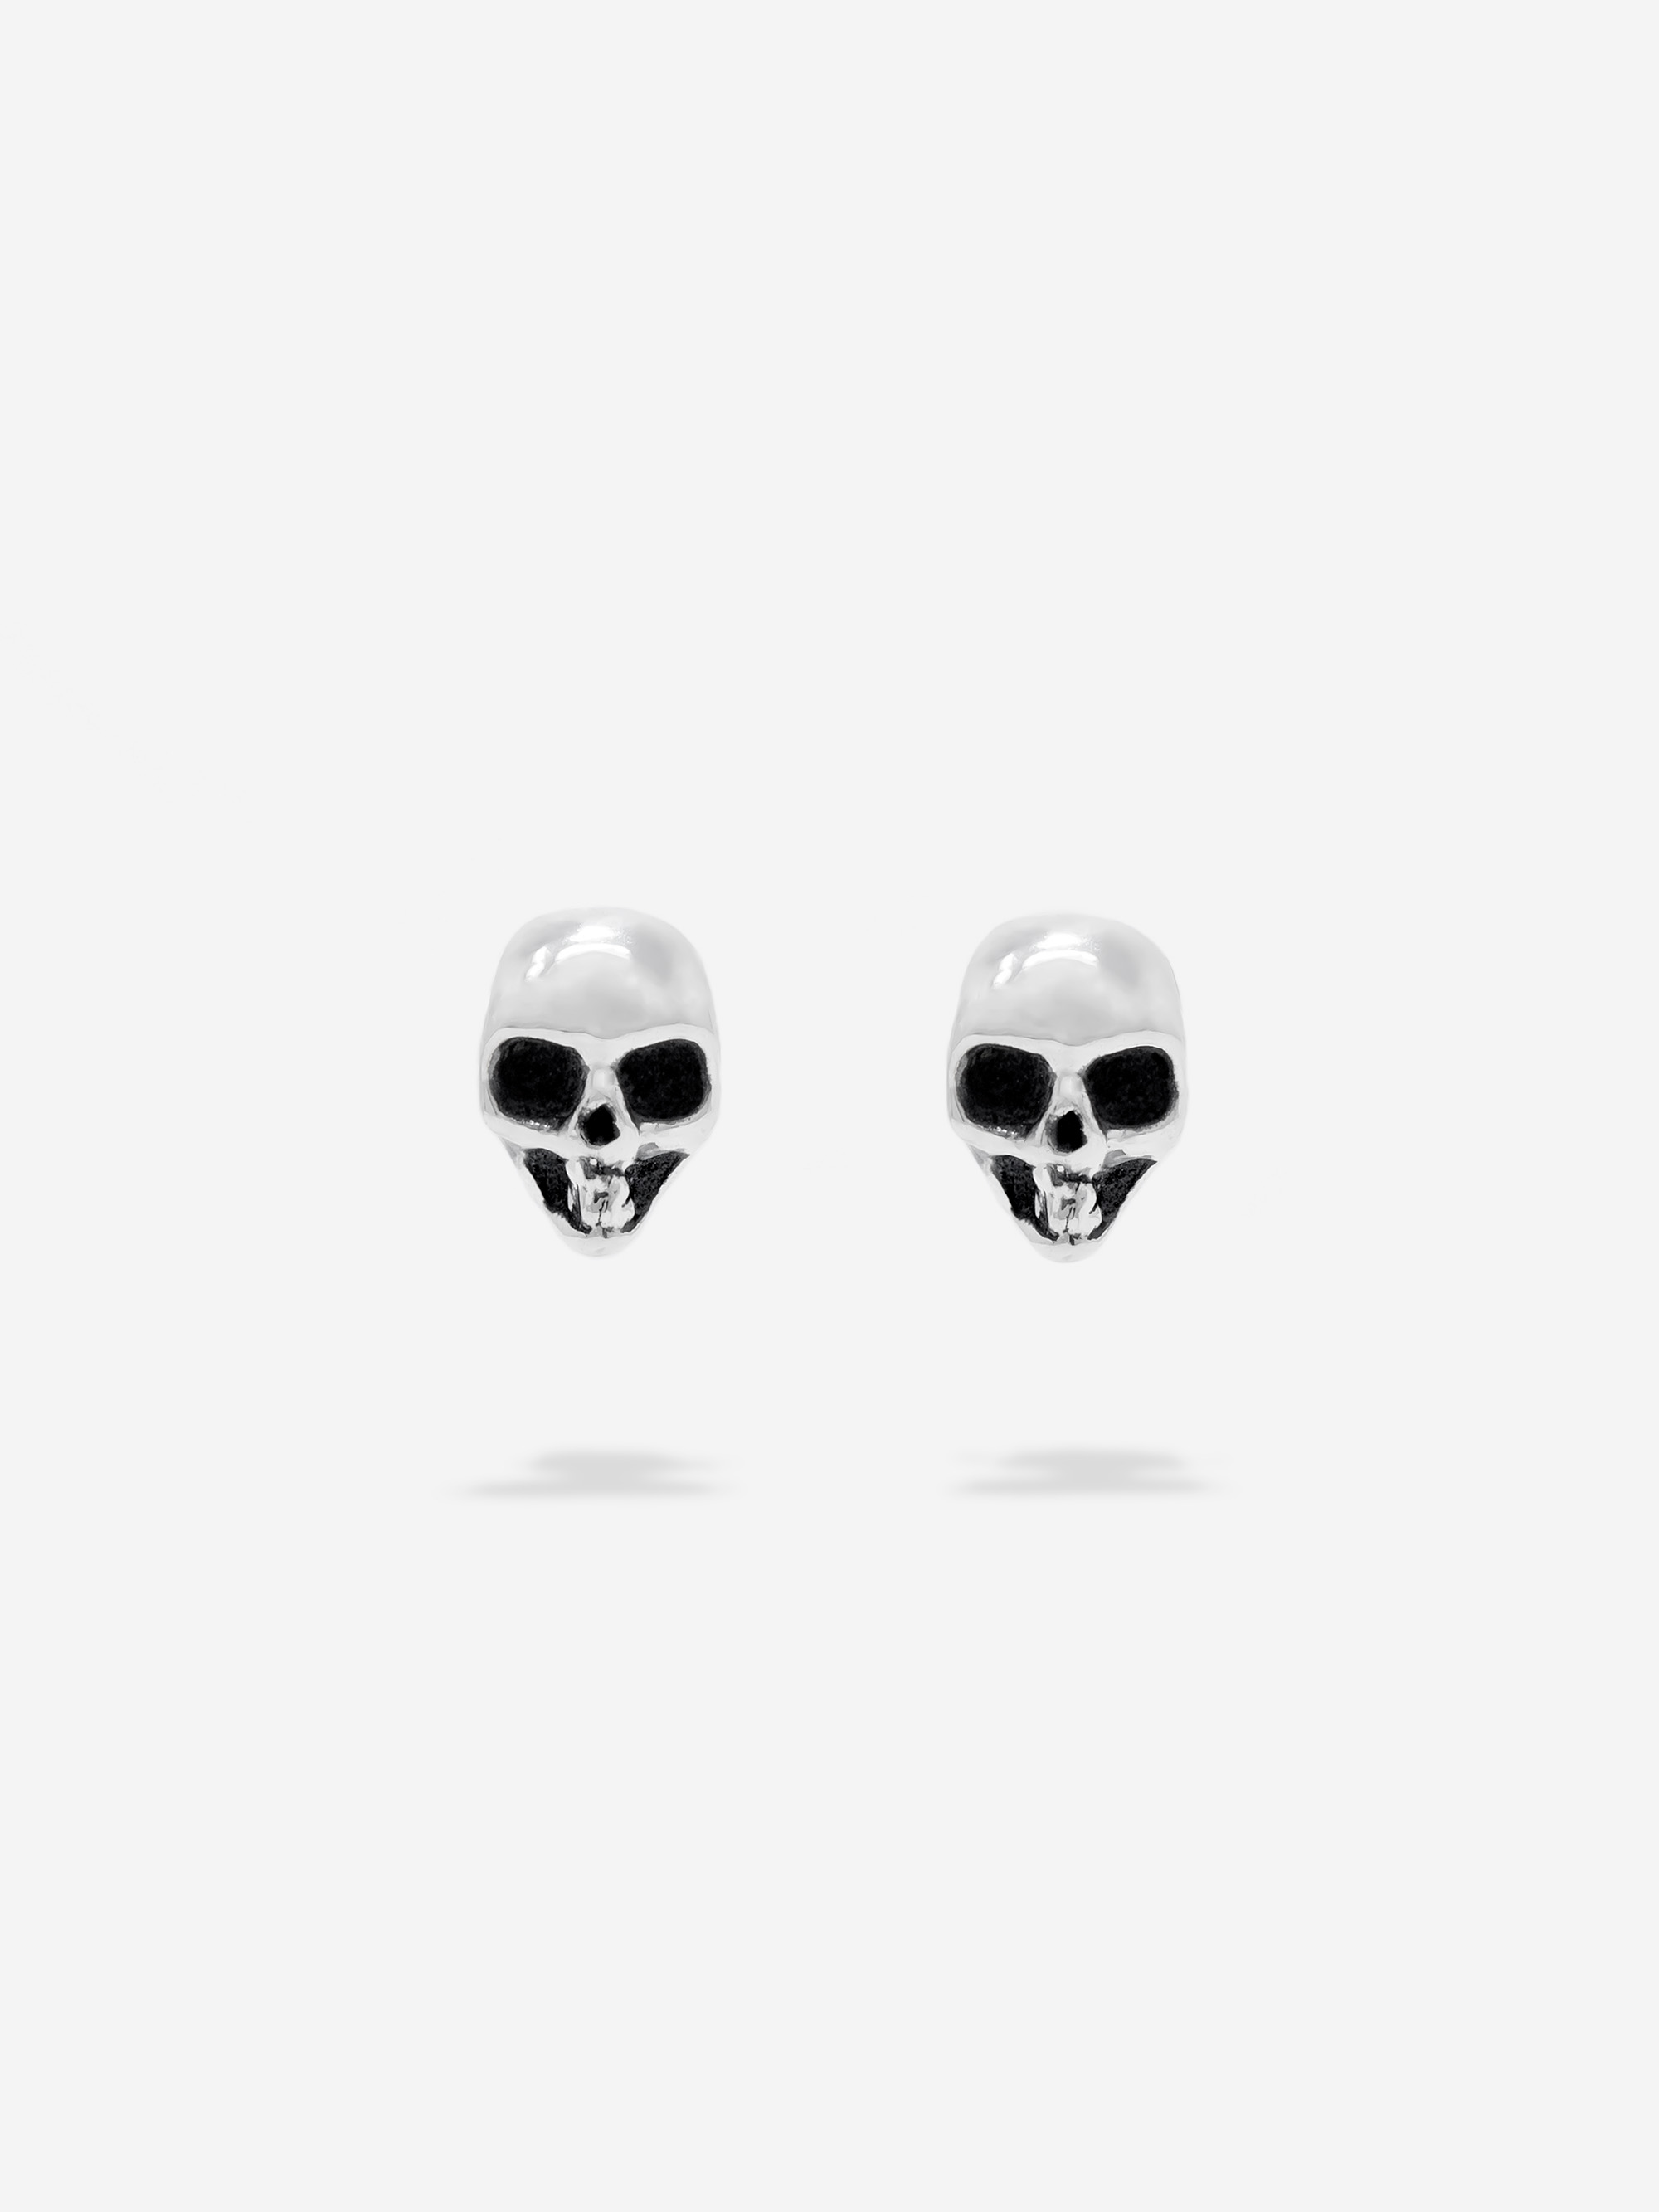 skull_earrings1.jpg